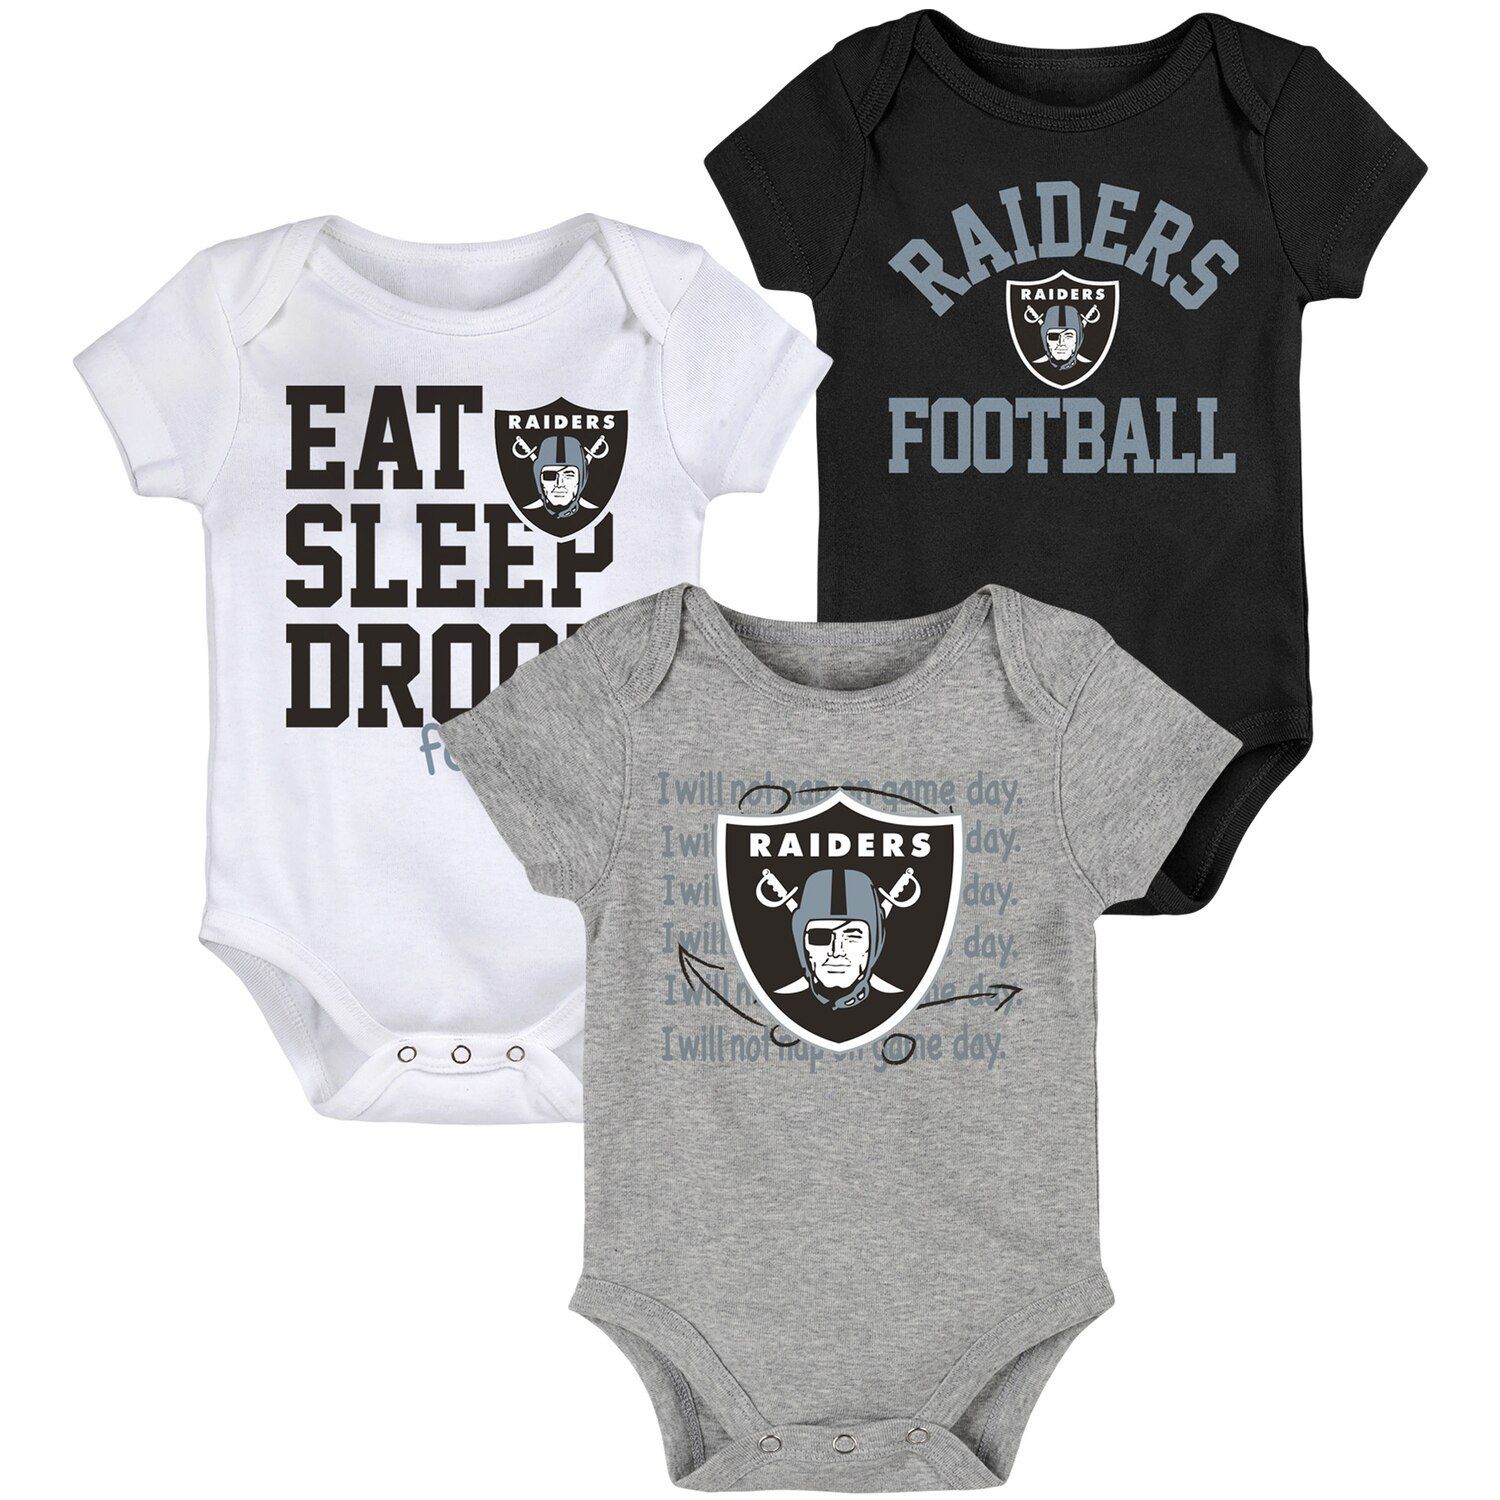 Черный/серый комплект боди для новорожденных и младенцев Oakland Raiders Eat, Sleep, Drool Football, состоящий из трех частей Outerstuff